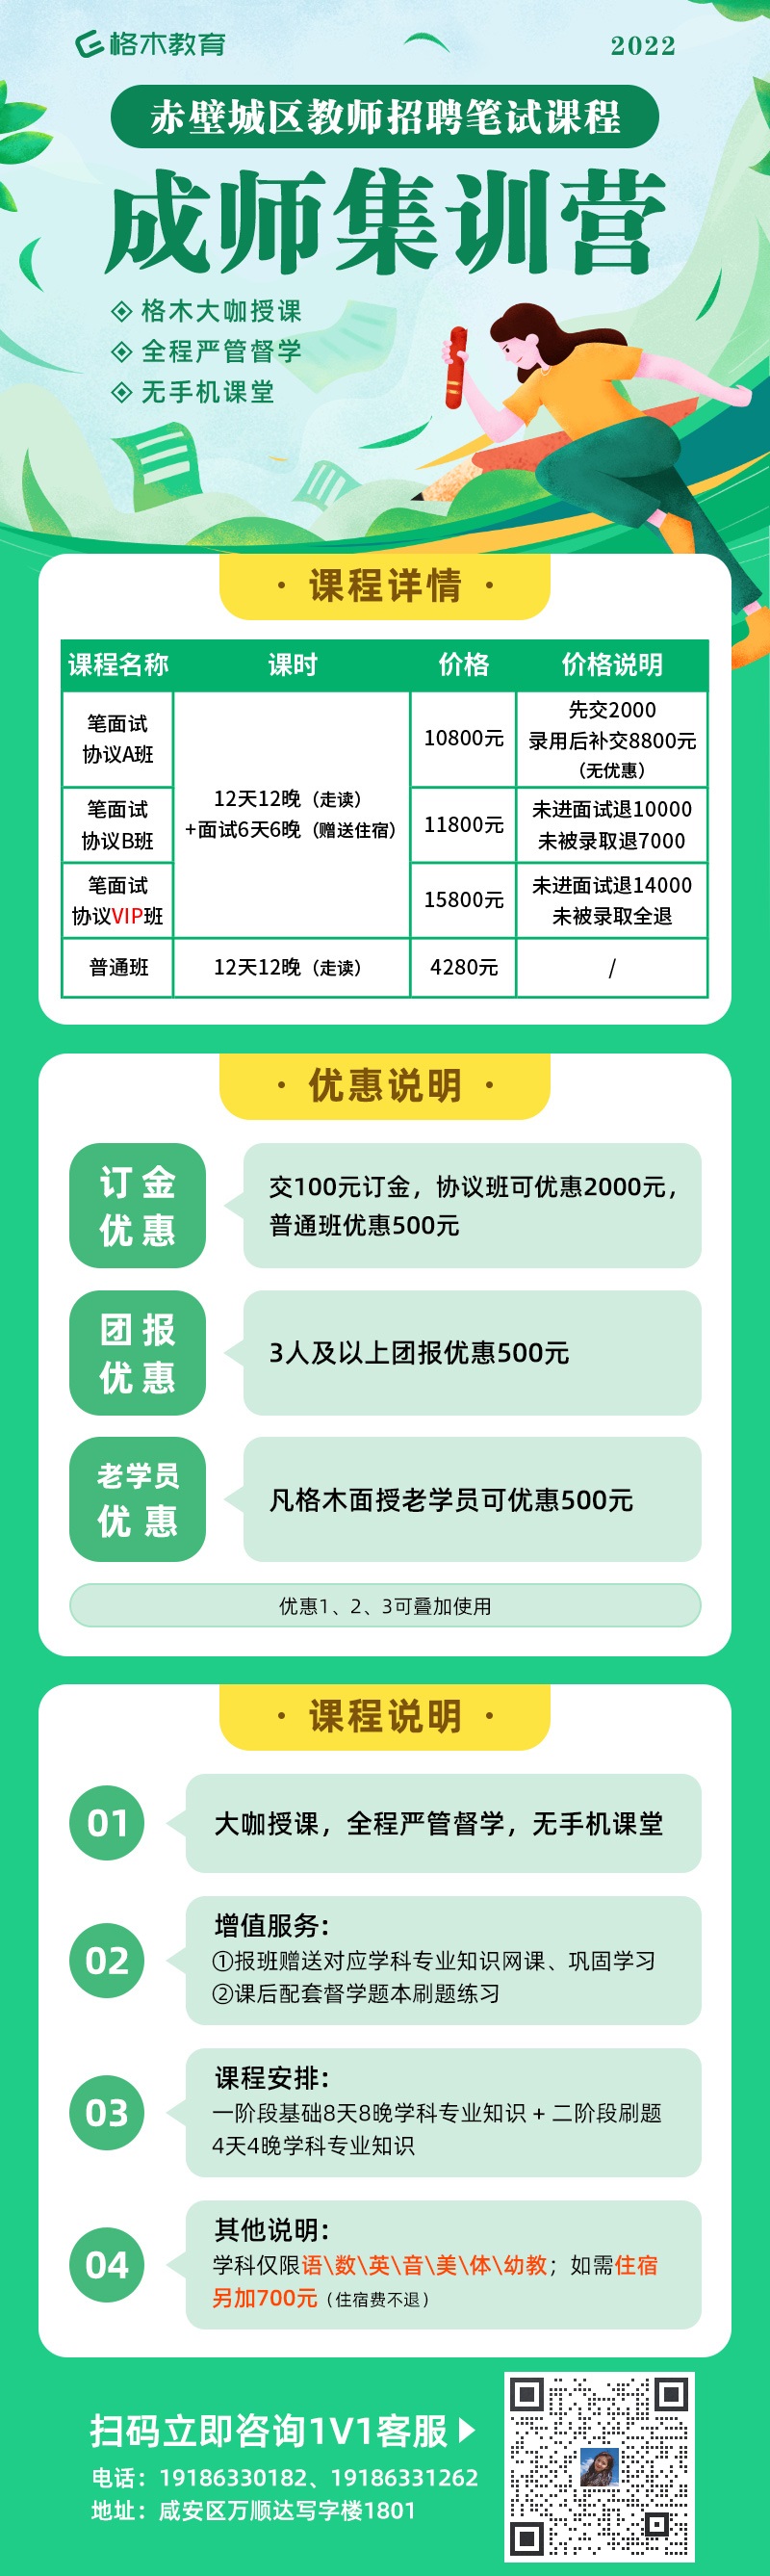 2022年咸宁赤壁市义务教师和农村幼儿园教师招聘190人信息汇总